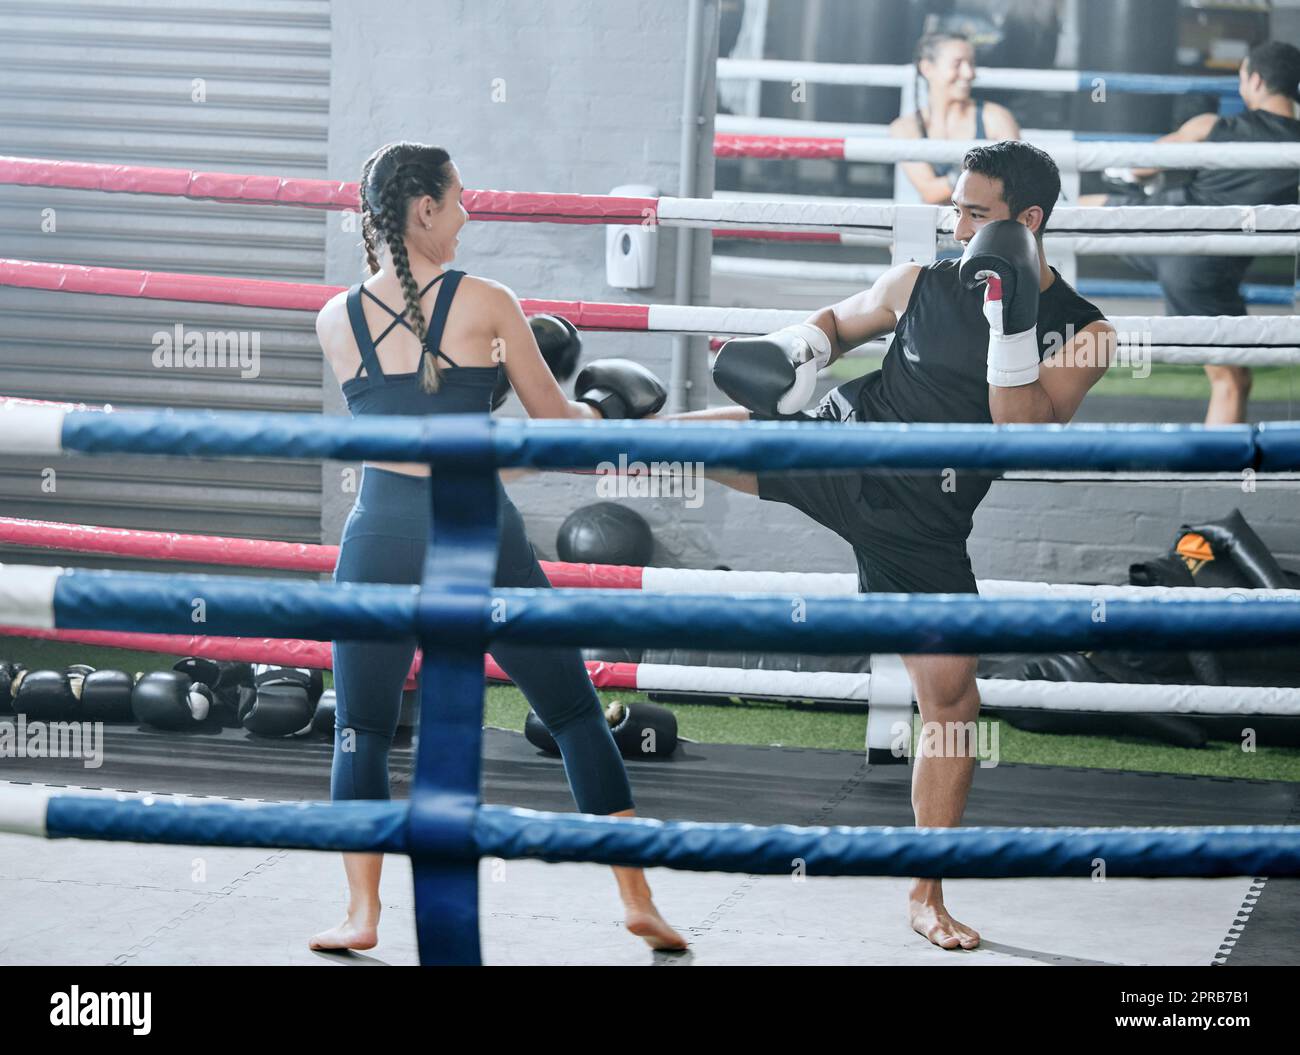 Femme en forme, en bonne santé et active effectuant un entraînement de boxe dans la salle de gym en train d'épargner avec son entraîneur personnel dans un centre de bien-être apprenant à se battre. Homme sportif contre femme dans un match de boxe dans un anneau Banque D'Images